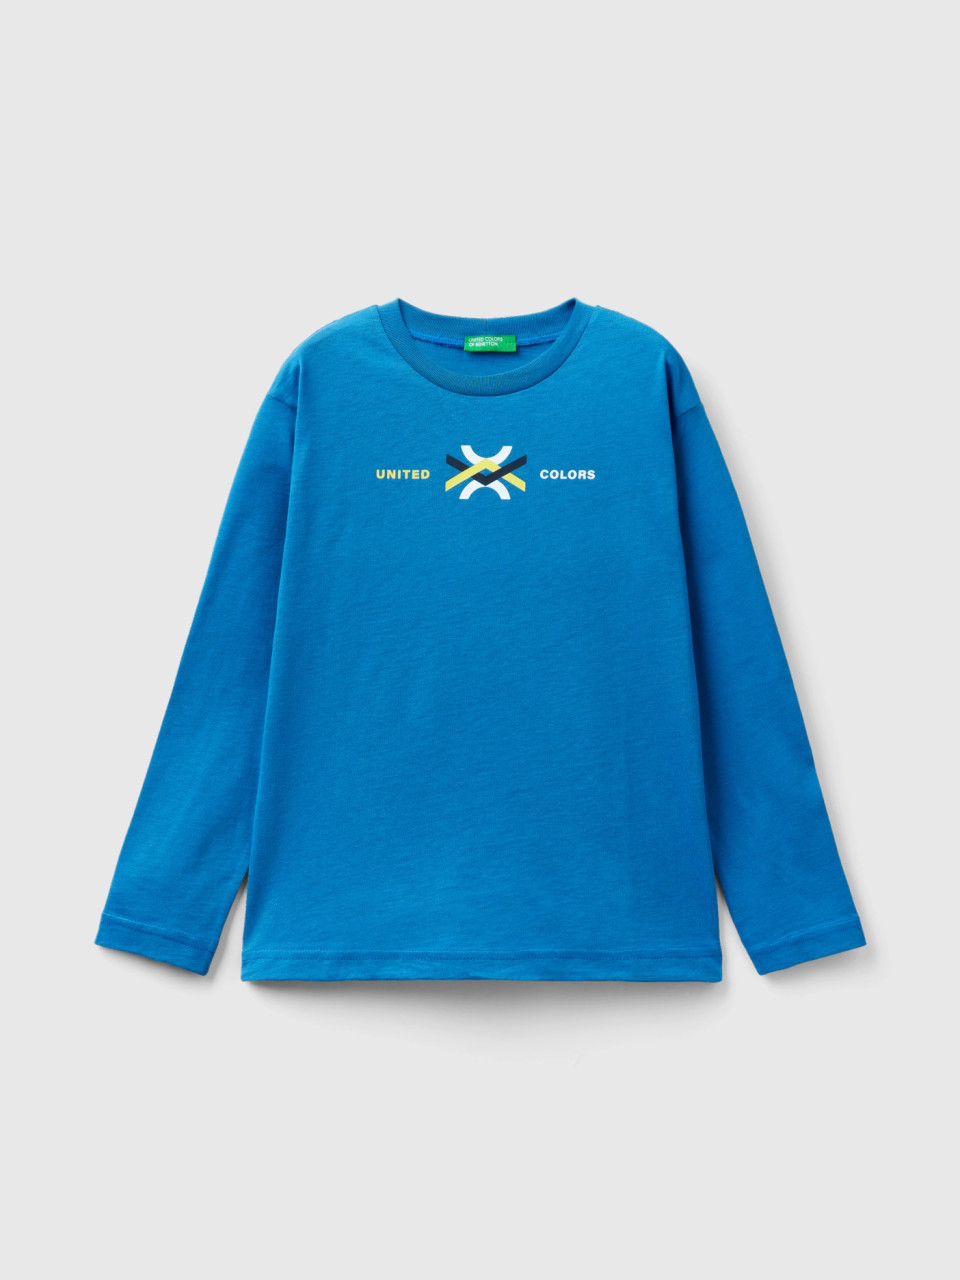 Benetton, T-shirt À Manches Longues En Coton Bio, Bleu, Enfants